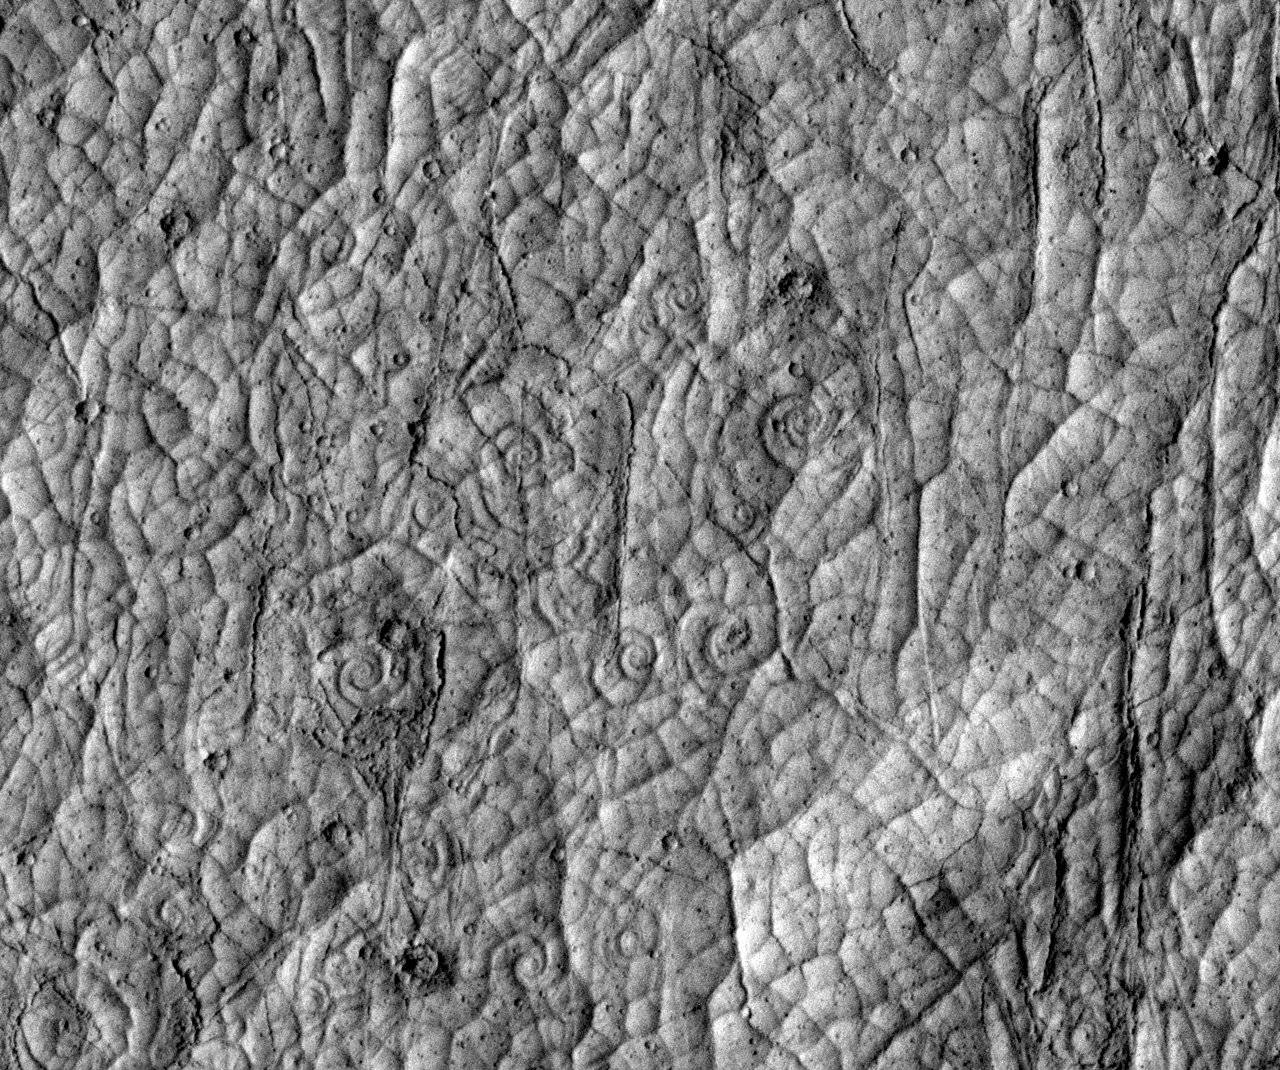 Espirales de lava en la corteza volcánica de Cerberus Palus, Marte.